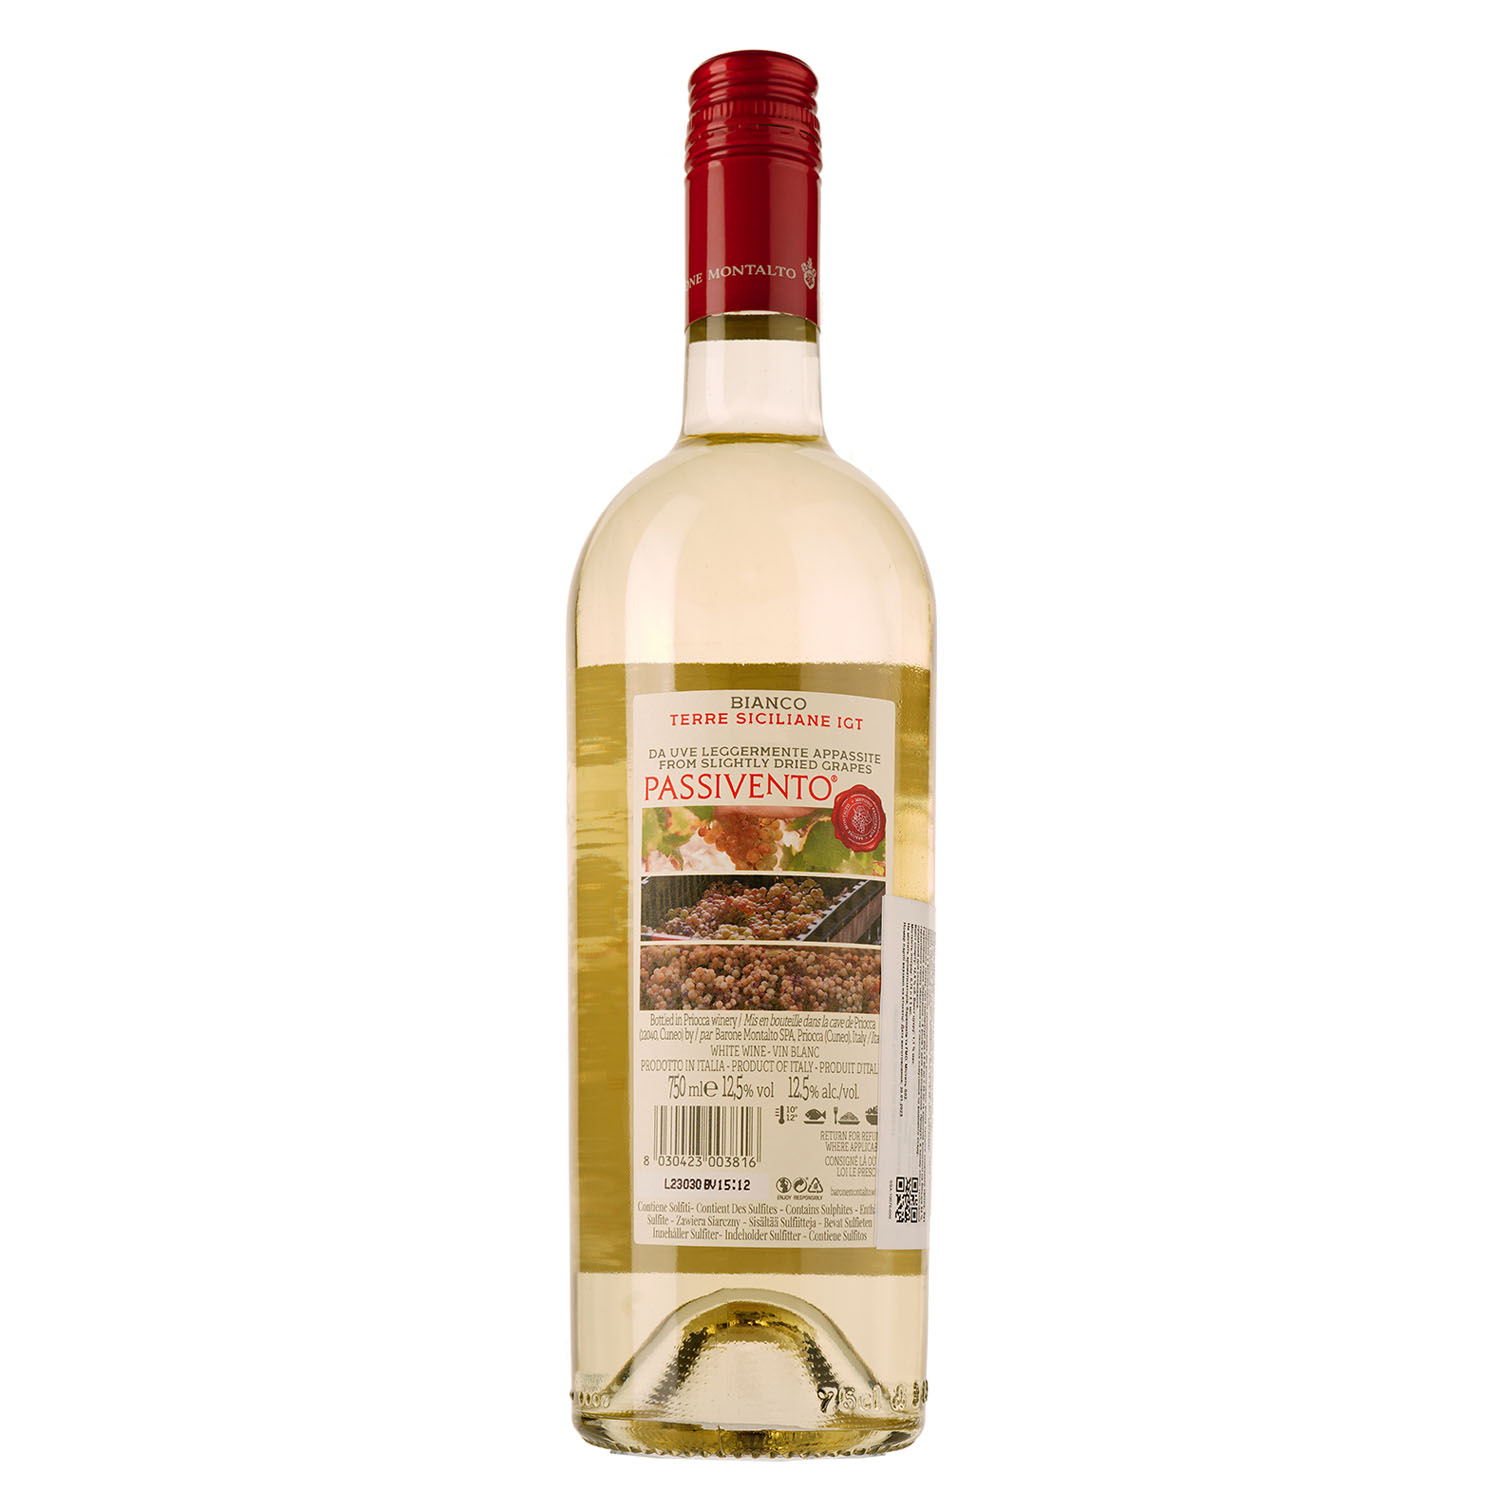 Вино Barone Montalto Passivento Terre Siciliane IGT, біле, напівсухе, 0,75 л - фото 1